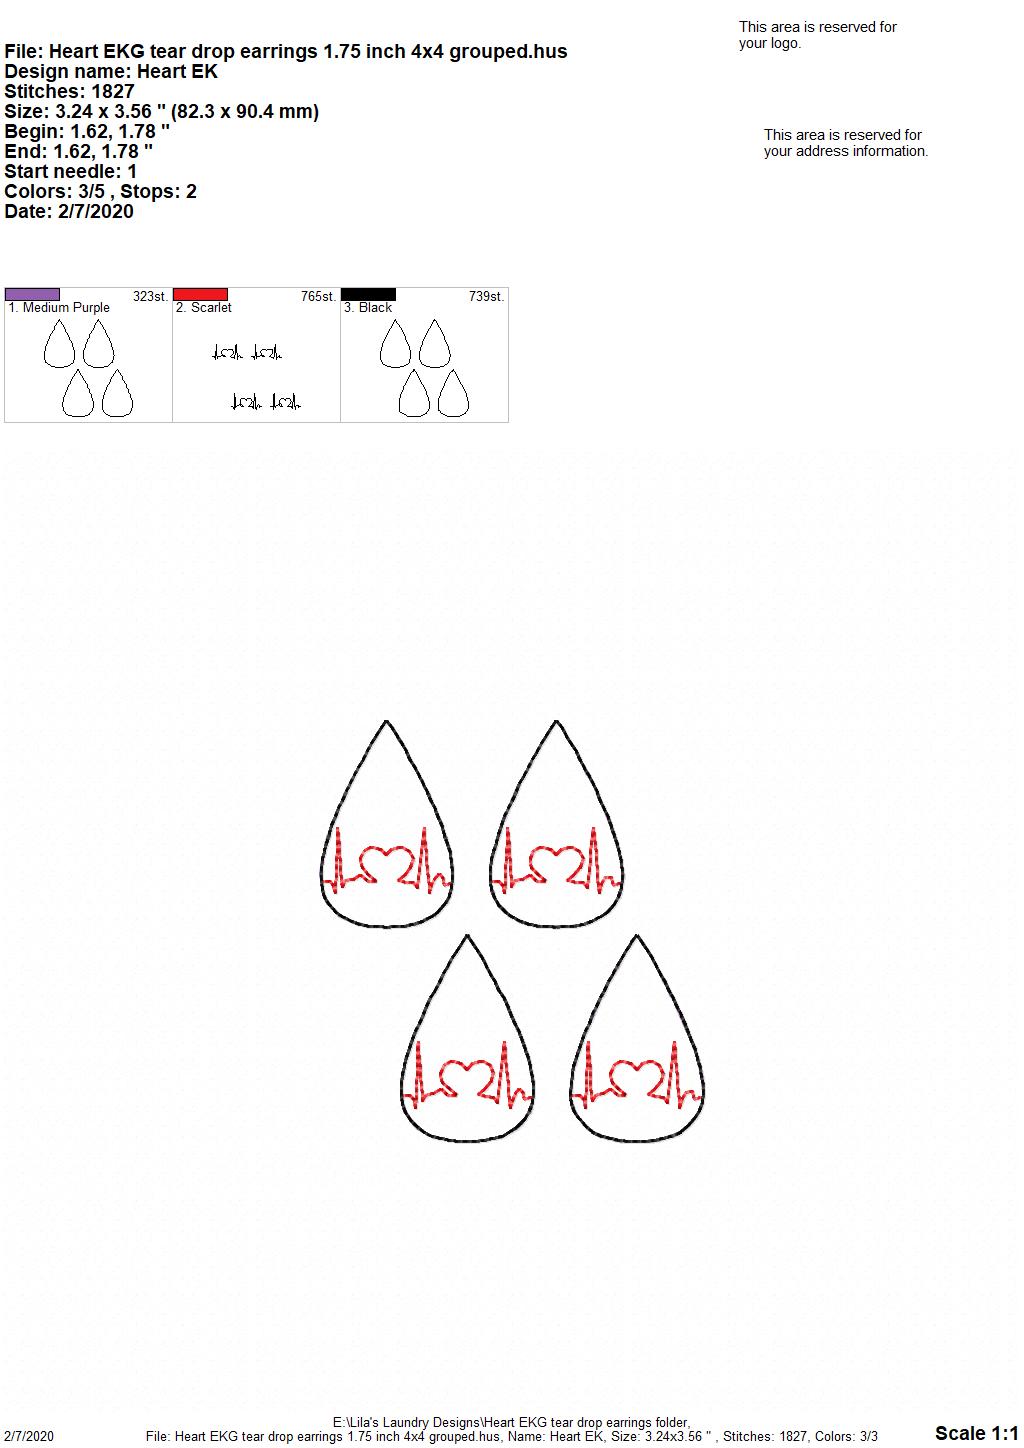 Heart EKG Tear Drop Earrings - 3 sizes - Digital Embroidery Design